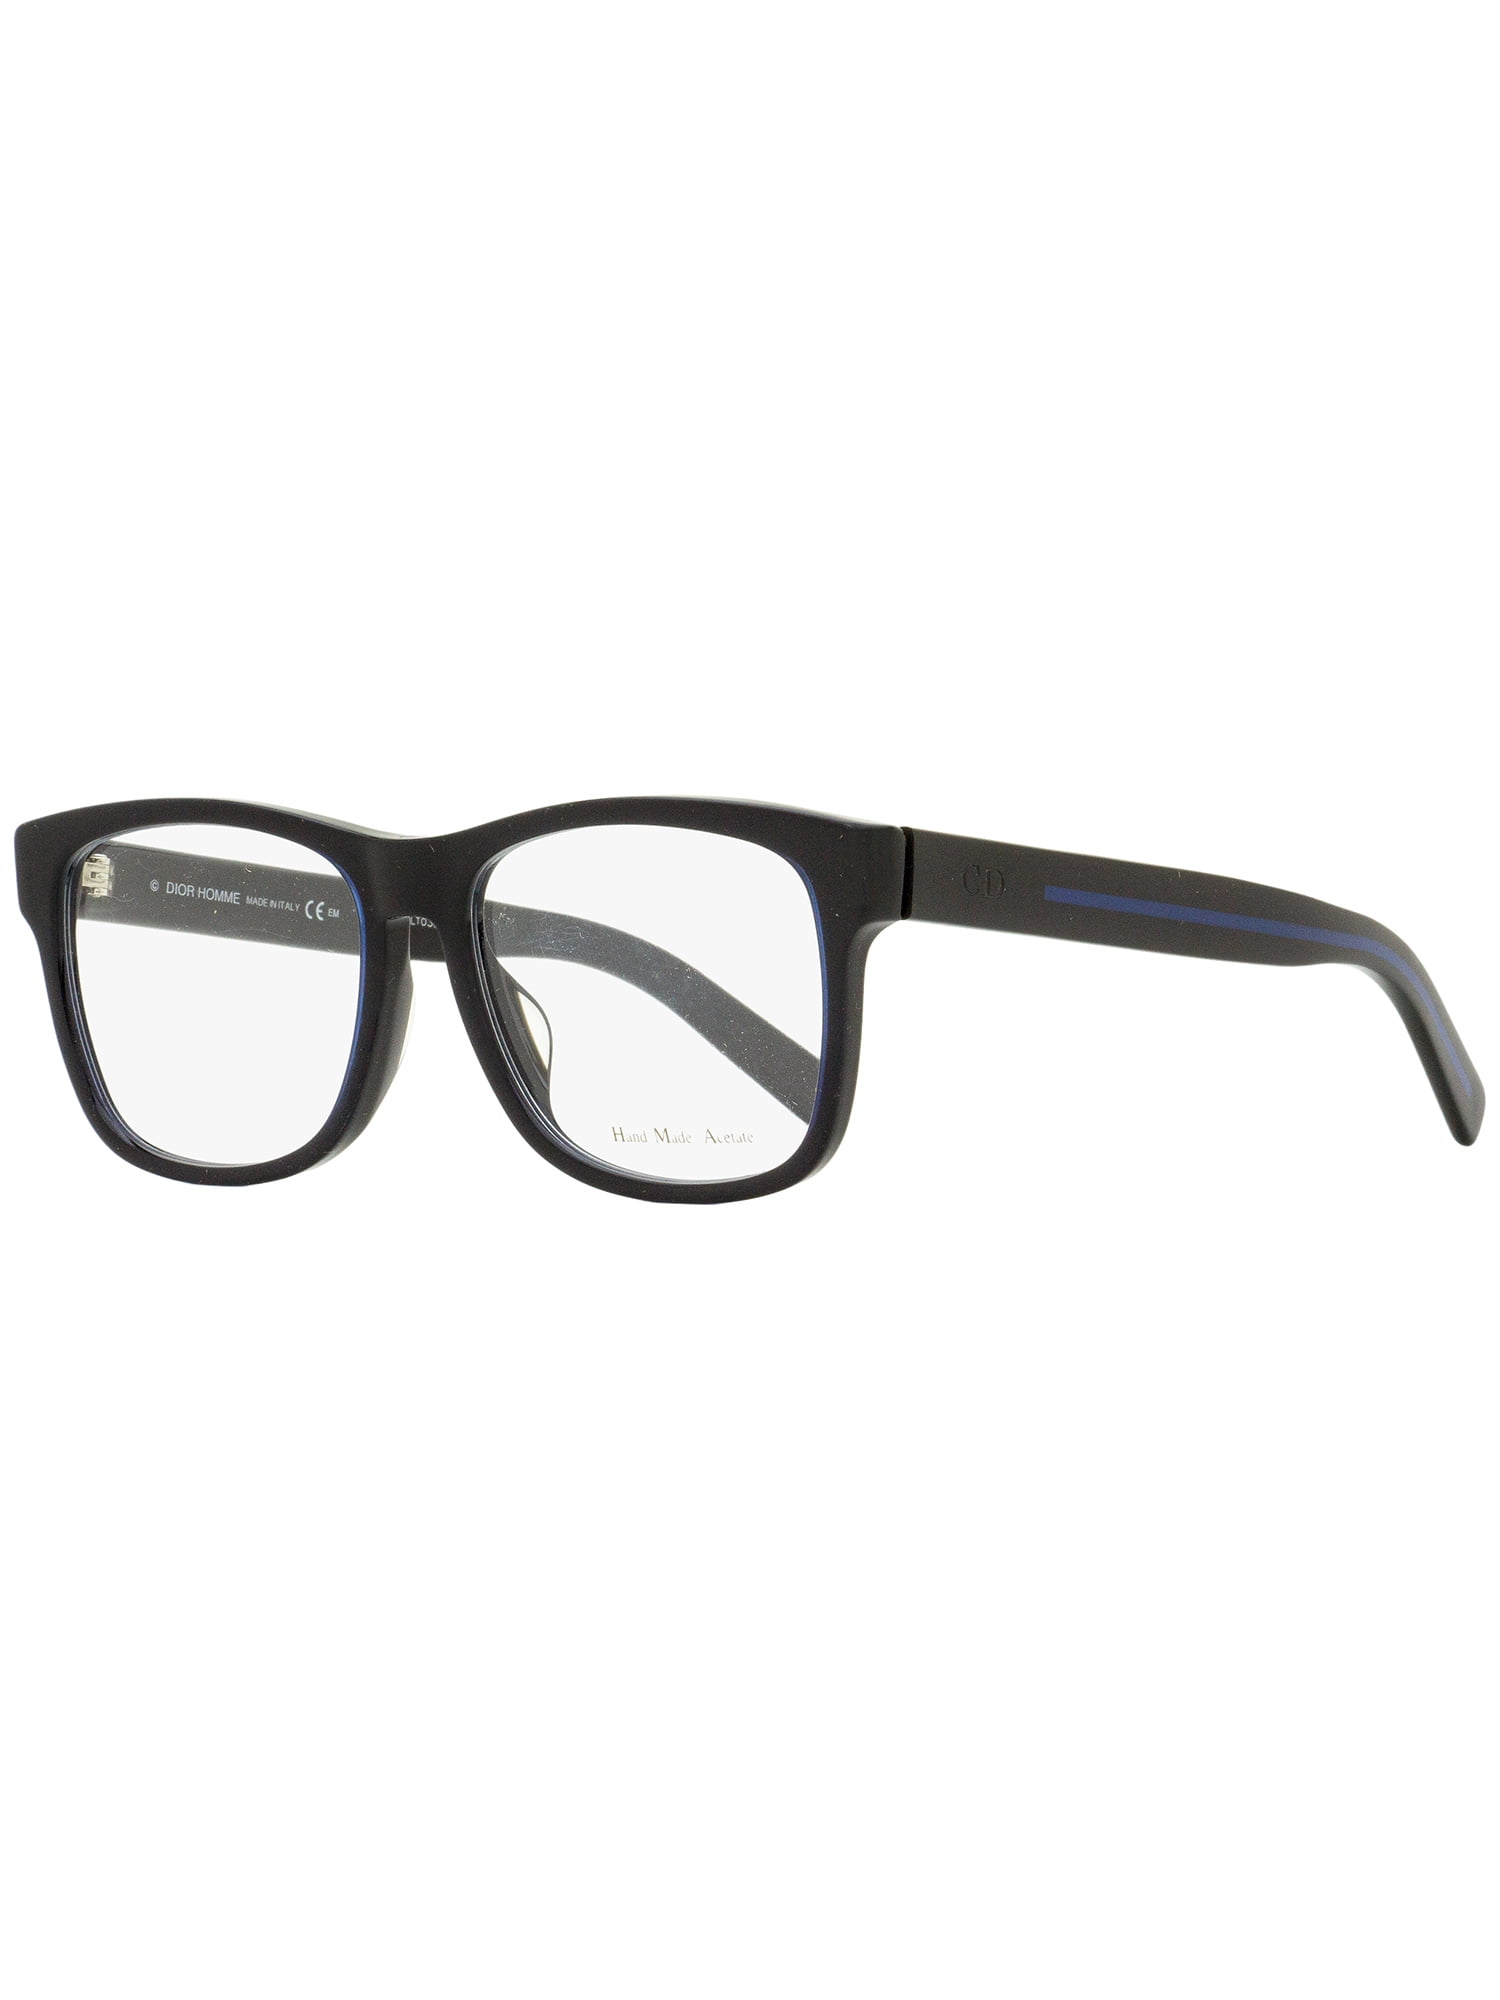 Dior Homme Eyeglasses Black Tie 197F KZO Black/Blue 56mm - Walmart.com